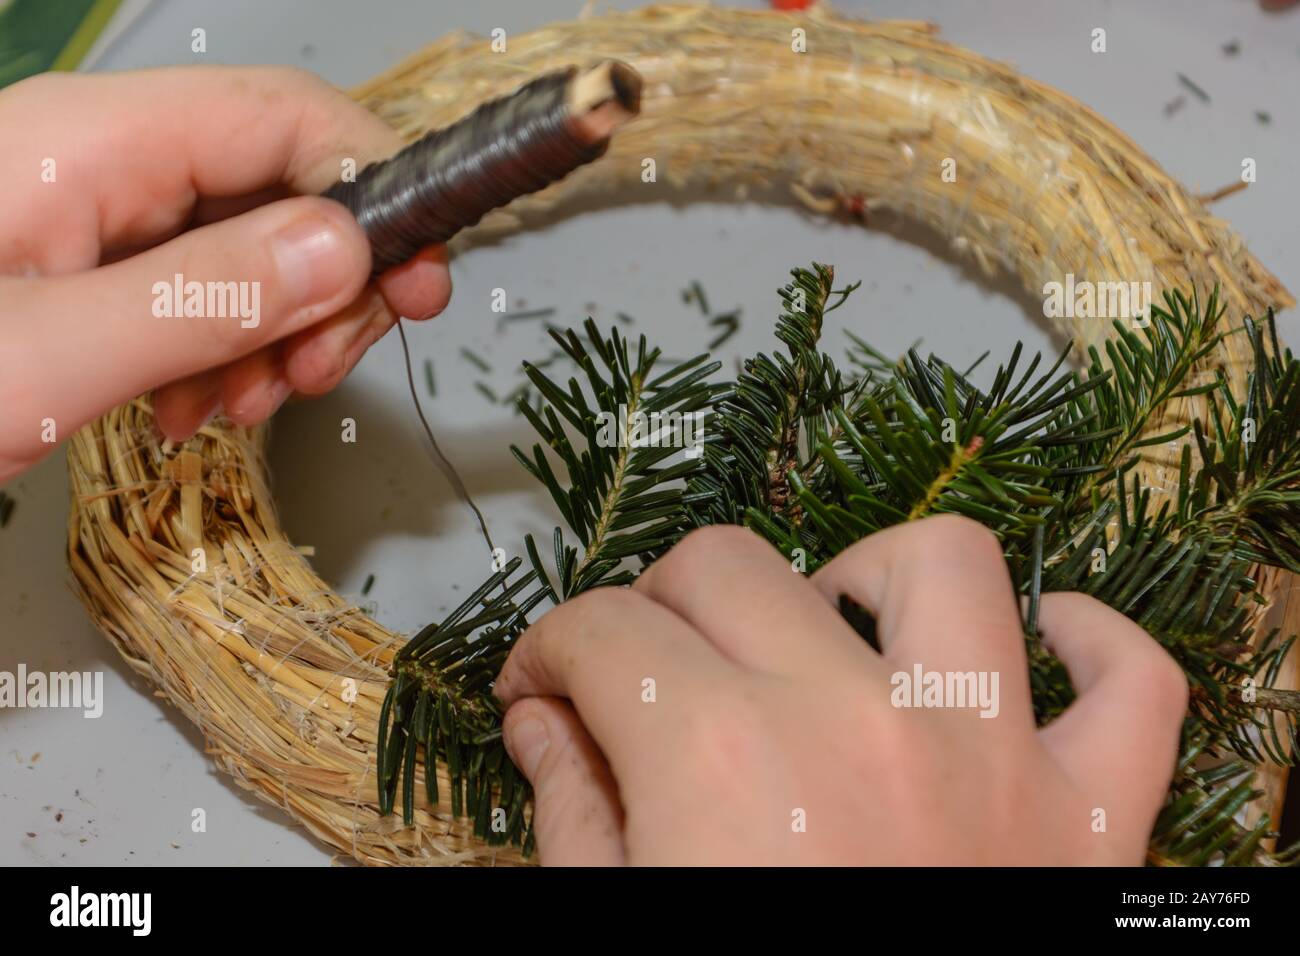 Blumenhändler binden einen Adventskranz - Nahaufnahme der Weihnachtssymbole Stockfoto